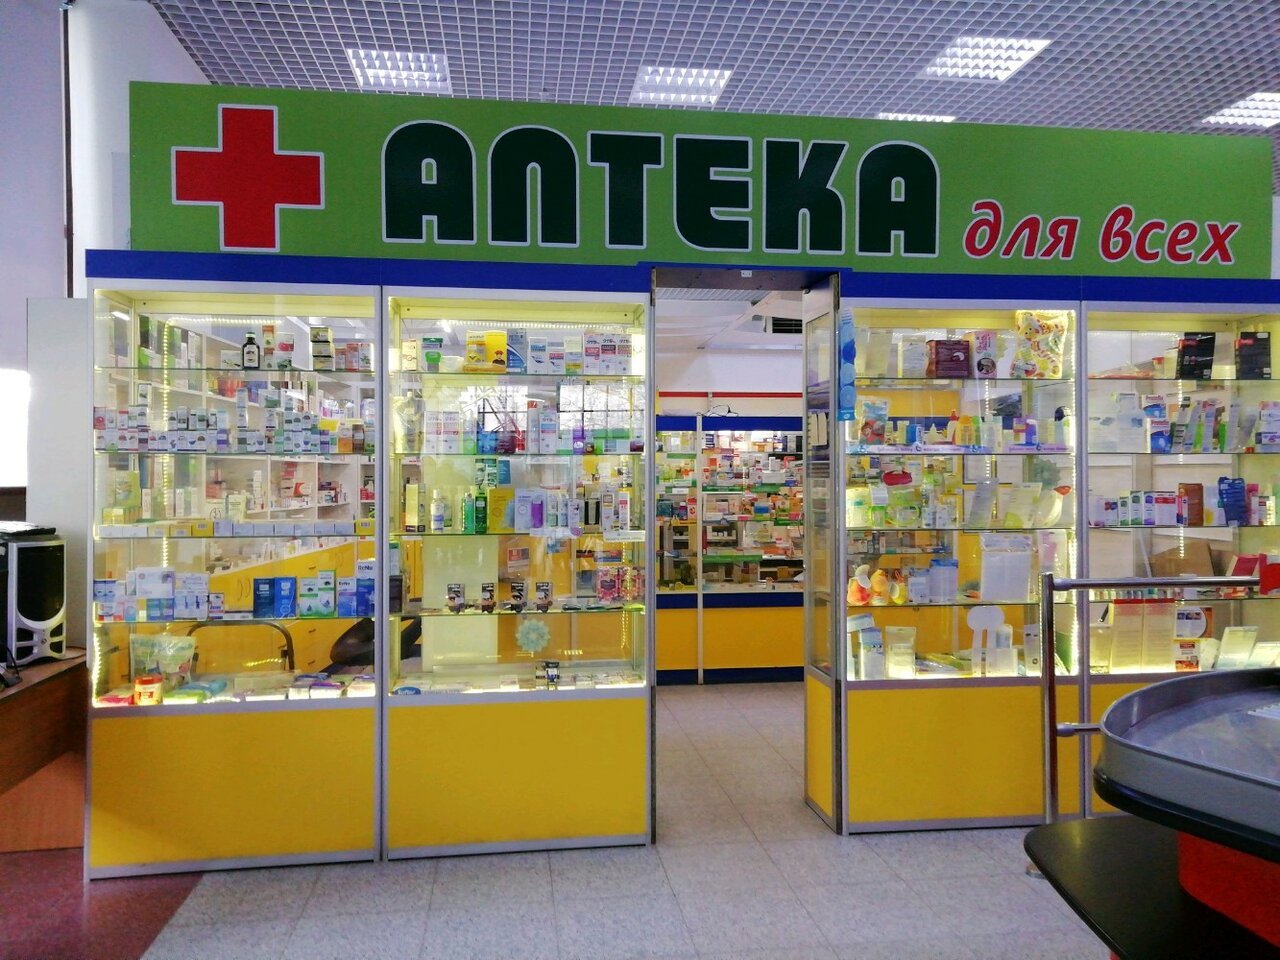 Apteka. Аптека. Аптека картина. Картинки магазин аптека. Аптека для всех.